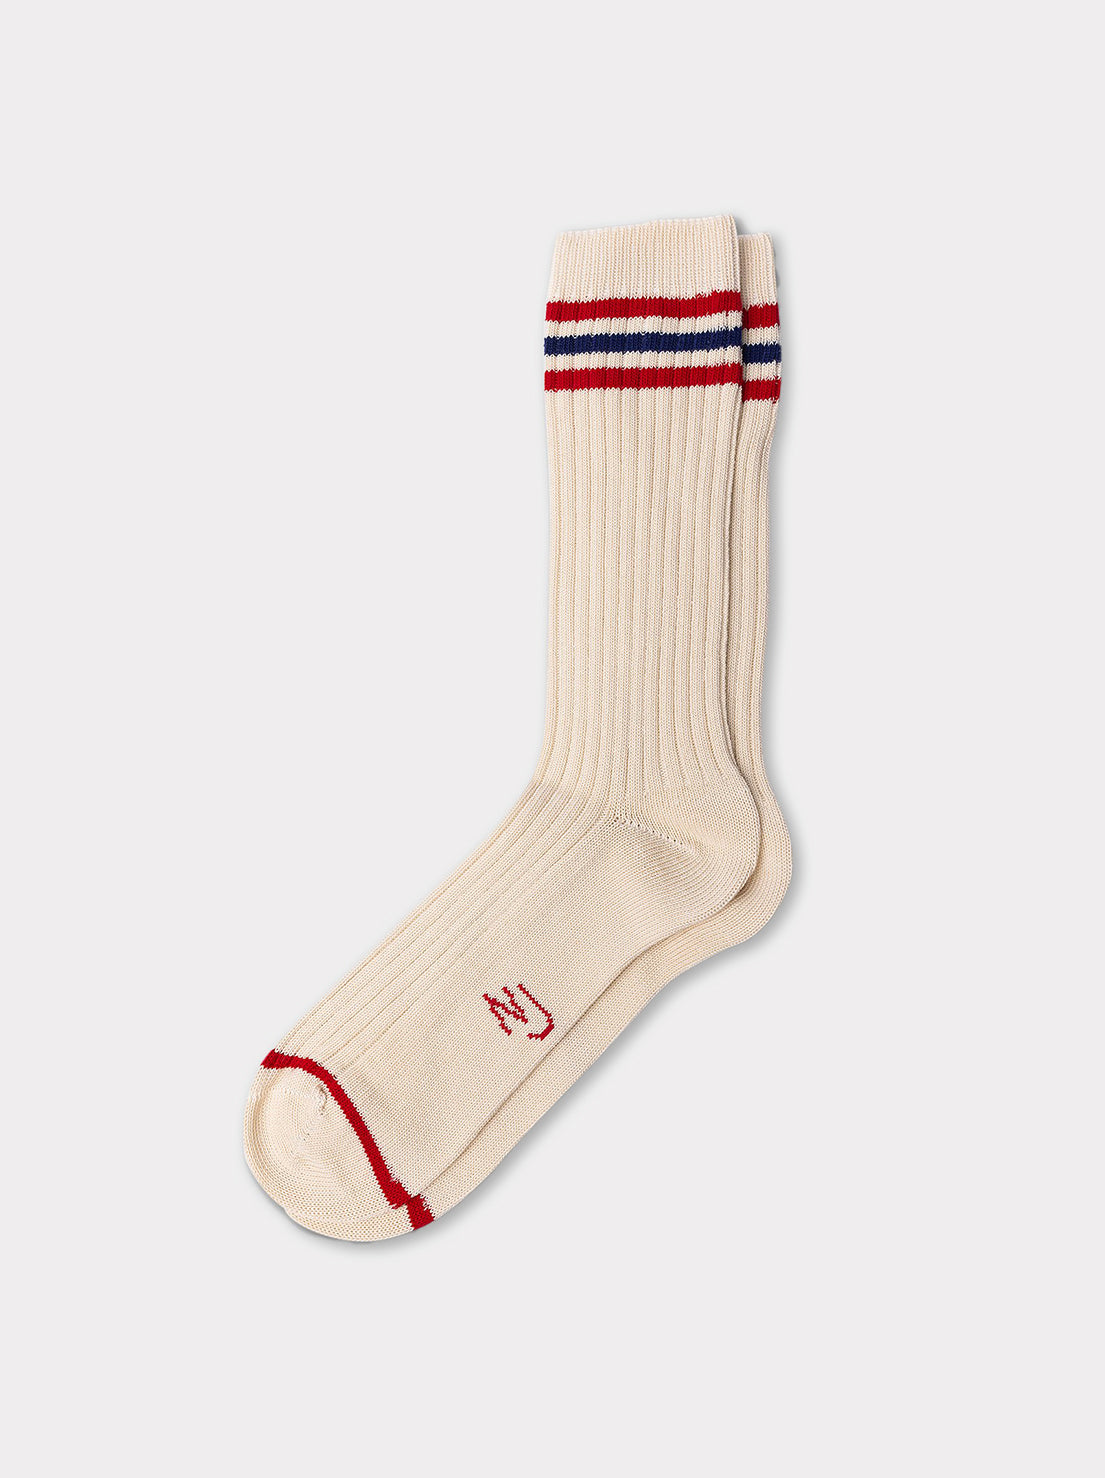 Nudie - Mens Vintage Sport Socks - Off White/Red – Abicus